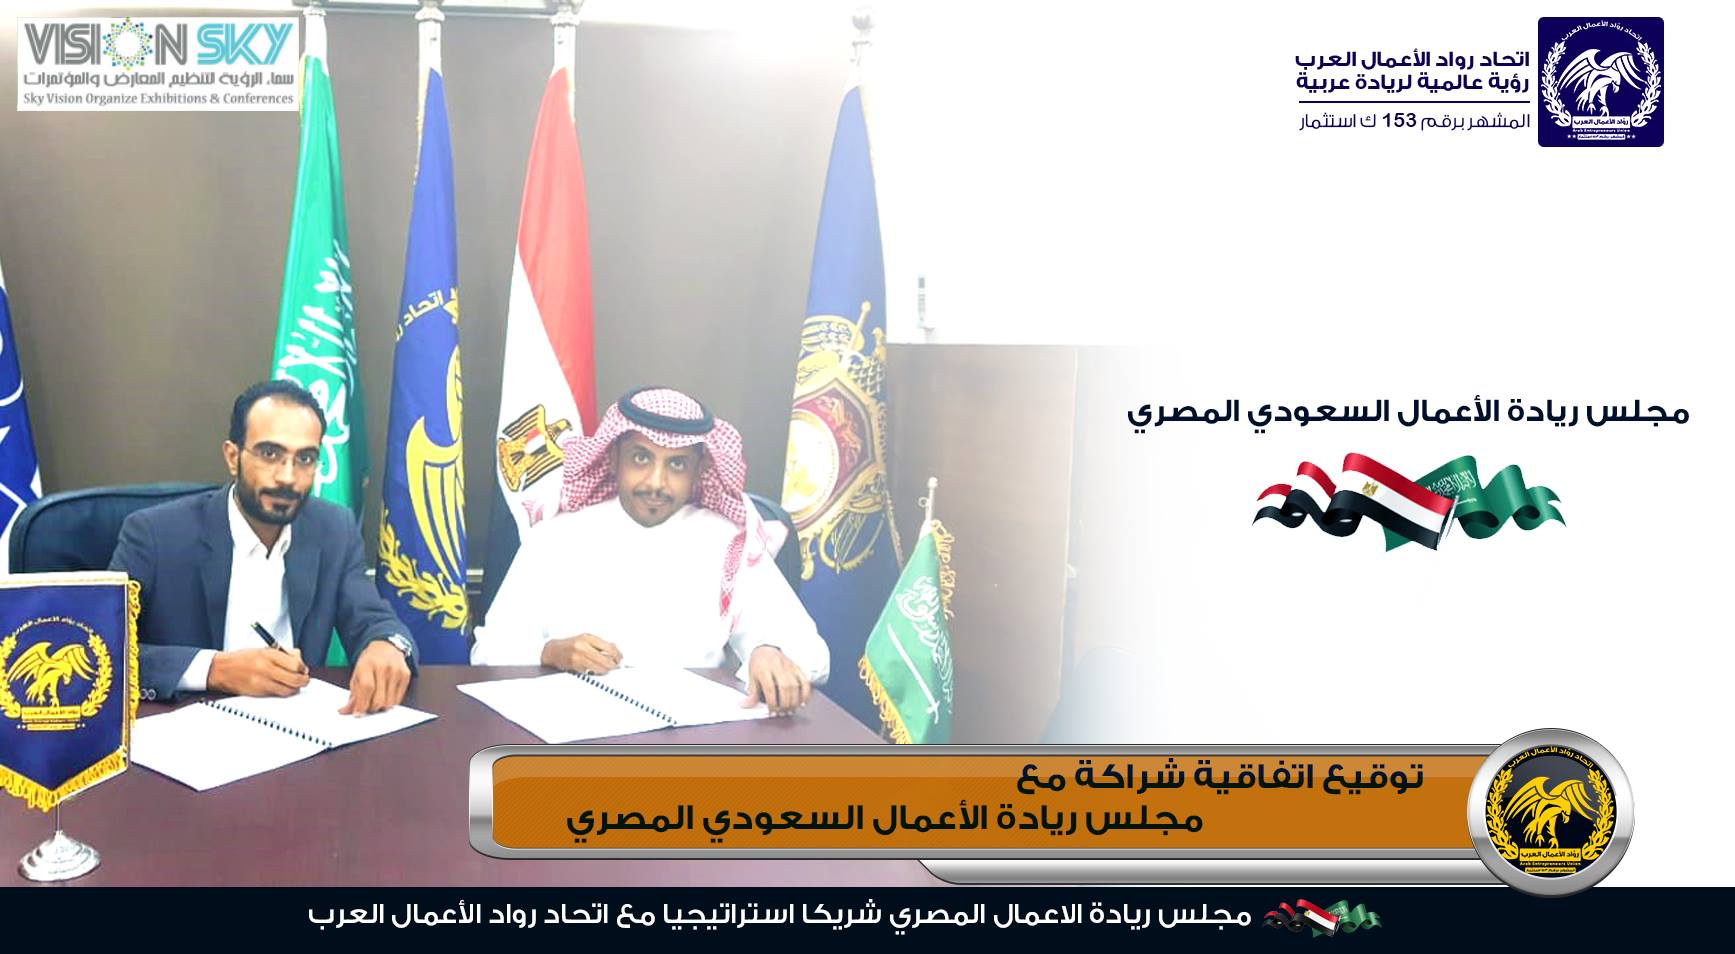 مجلس ريادة الأعمال السعودي المصري شريكاً استراتيجياً مع اتحاد رواد الاعمال العرب